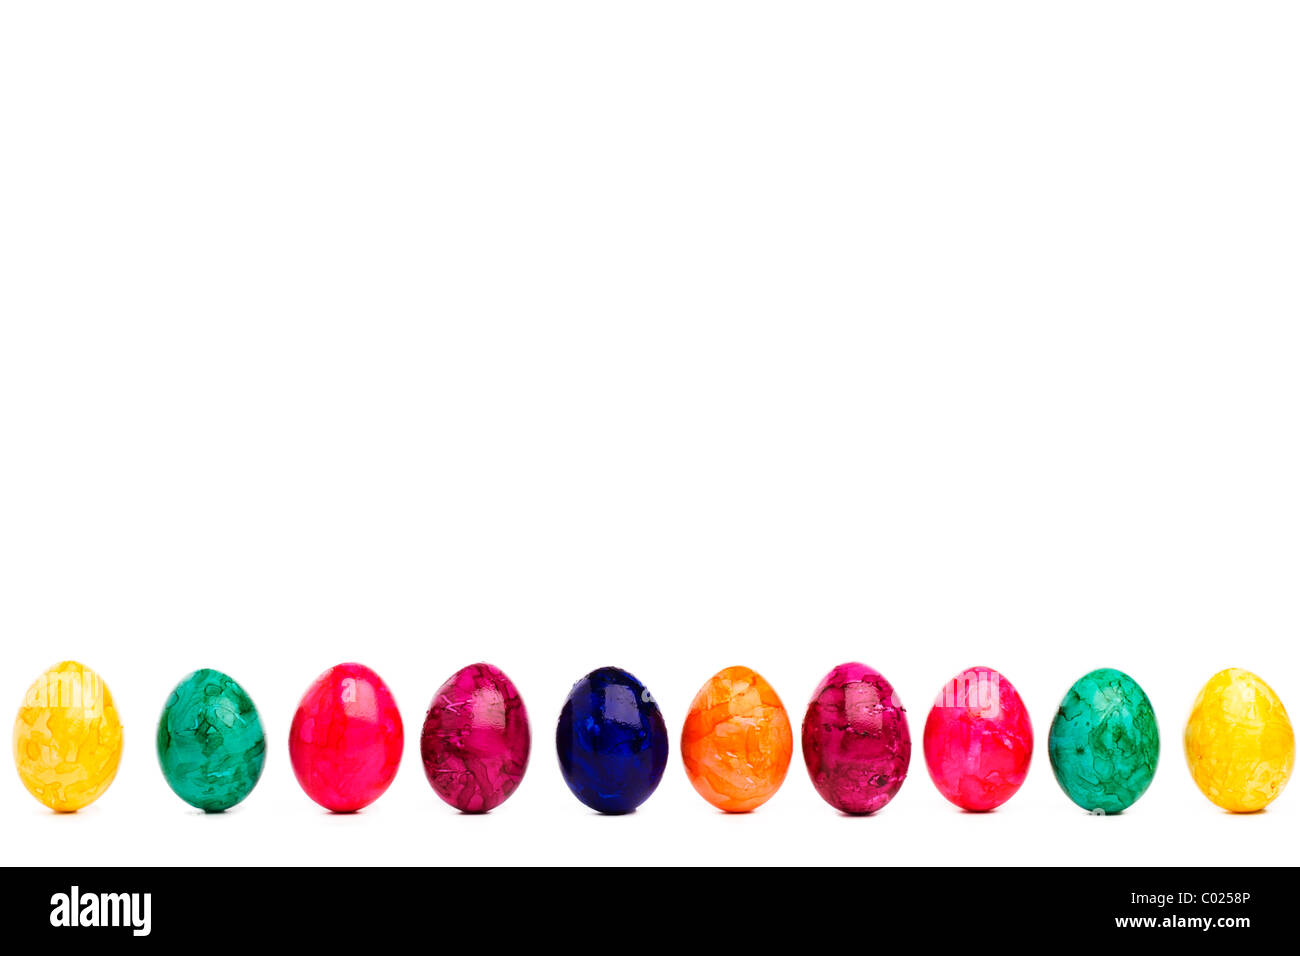 Lunga fila colorata delle uova di pasqua su sfondo bianco Foto Stock